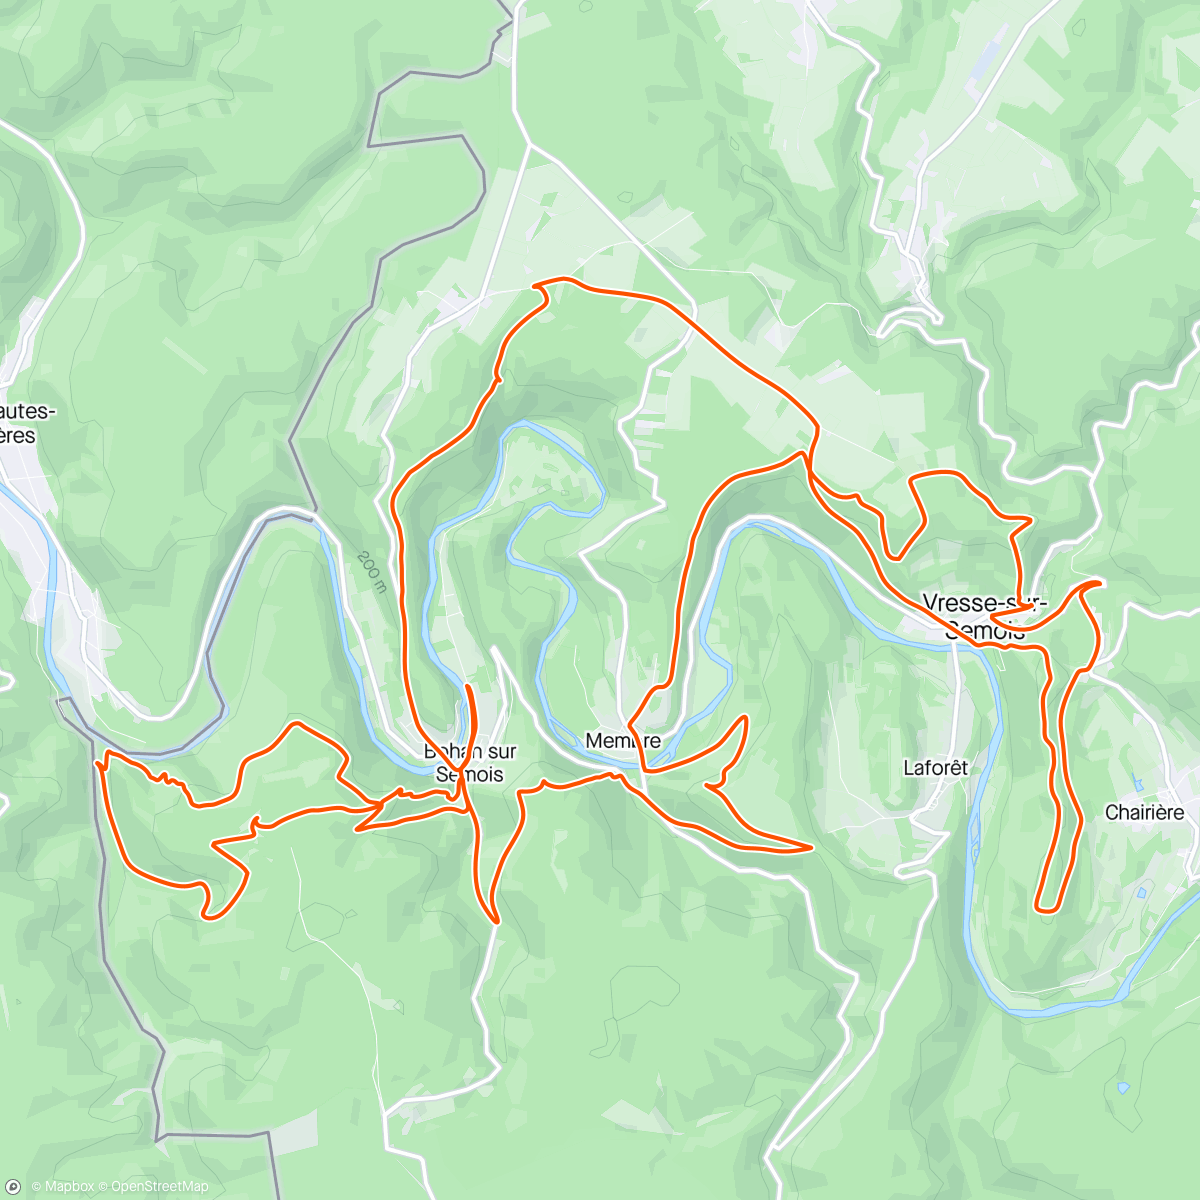 Mappa dell'attività BOHAN op zijn lekkerst, met romige trailsaus